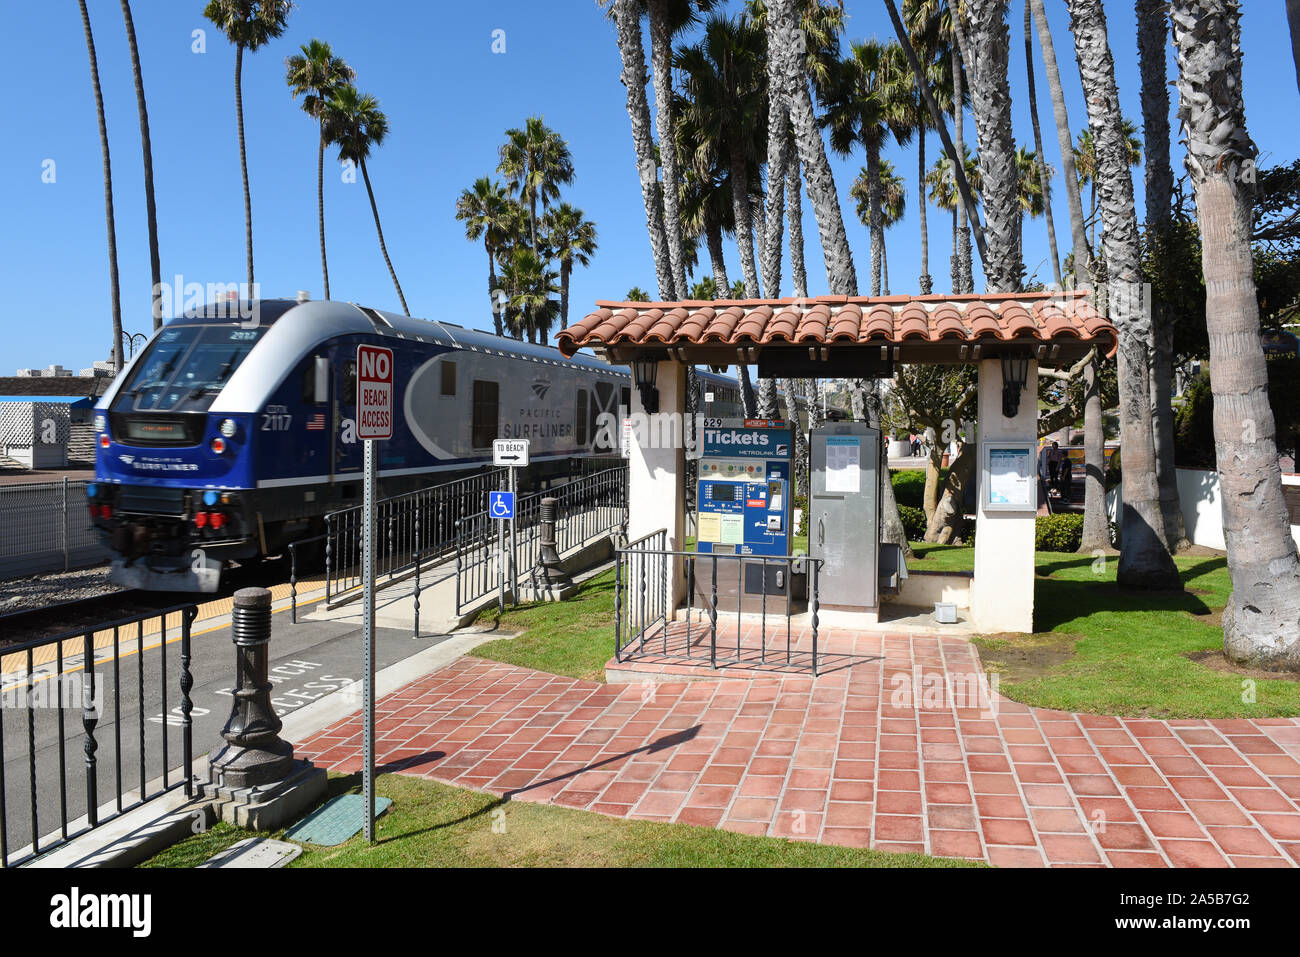 SAN CLEMENTE, CALIFORNIE - 18 OCT 2019 : Ticket Kiosque de l'Sancelmente Pier comme Pacific Surfliner Metrolink à travers la vitesse des trains. Banque D'Images